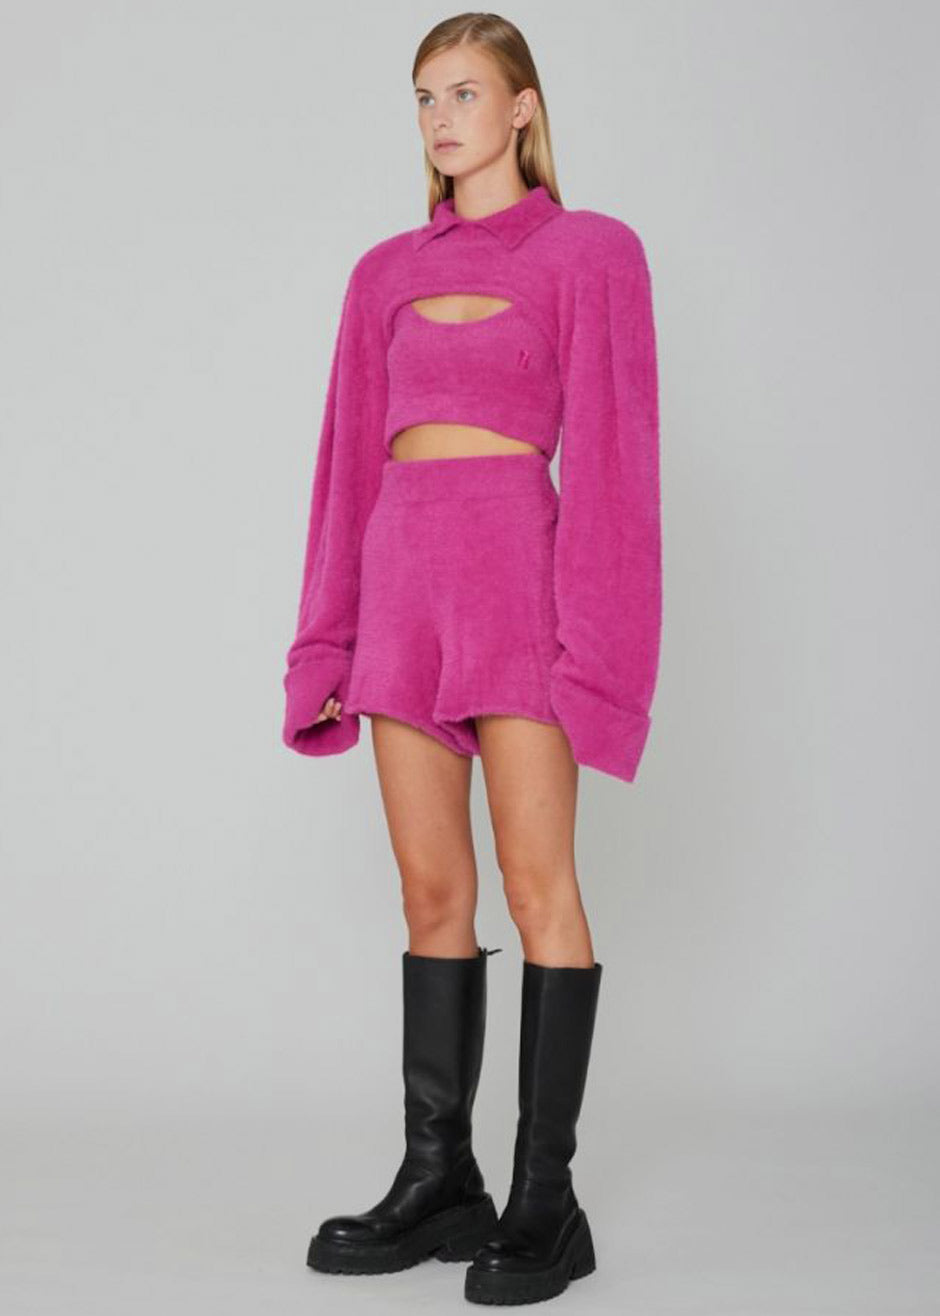 ROTATE Suzi Knit Shorts - Very Berry Pink - 1